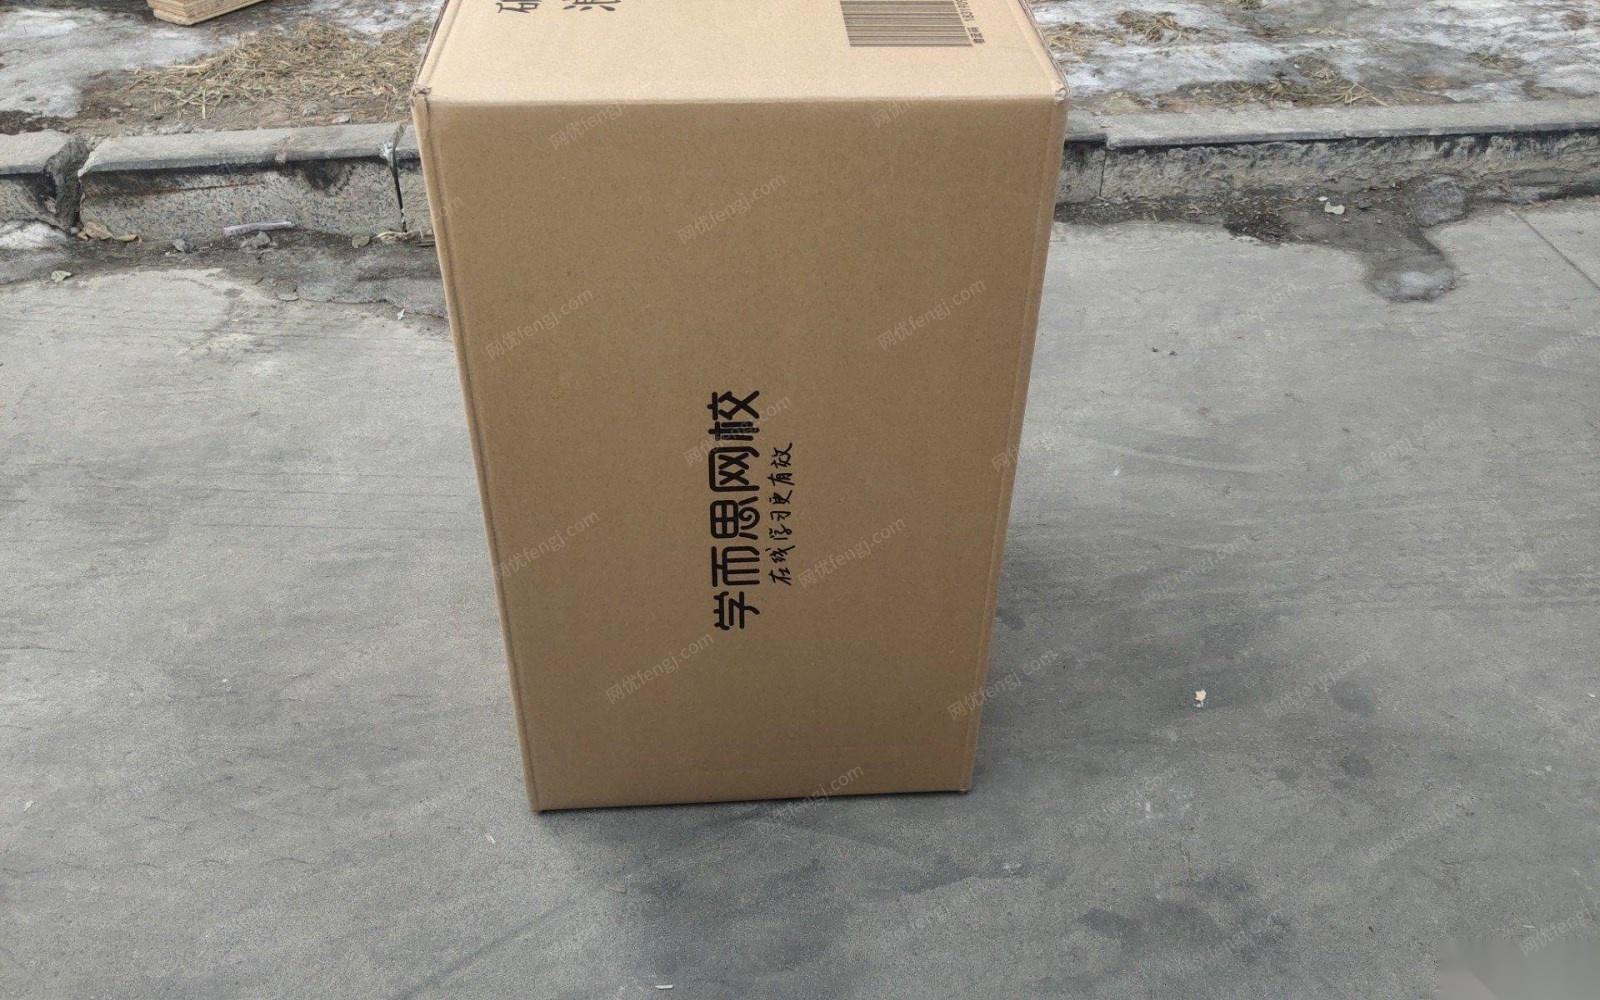 天津西青区出售大量二手纸箱尺寸54*35*35.5  几千个/月,长期有货,有现货,需要的话提前说,需要整理.客户报价.